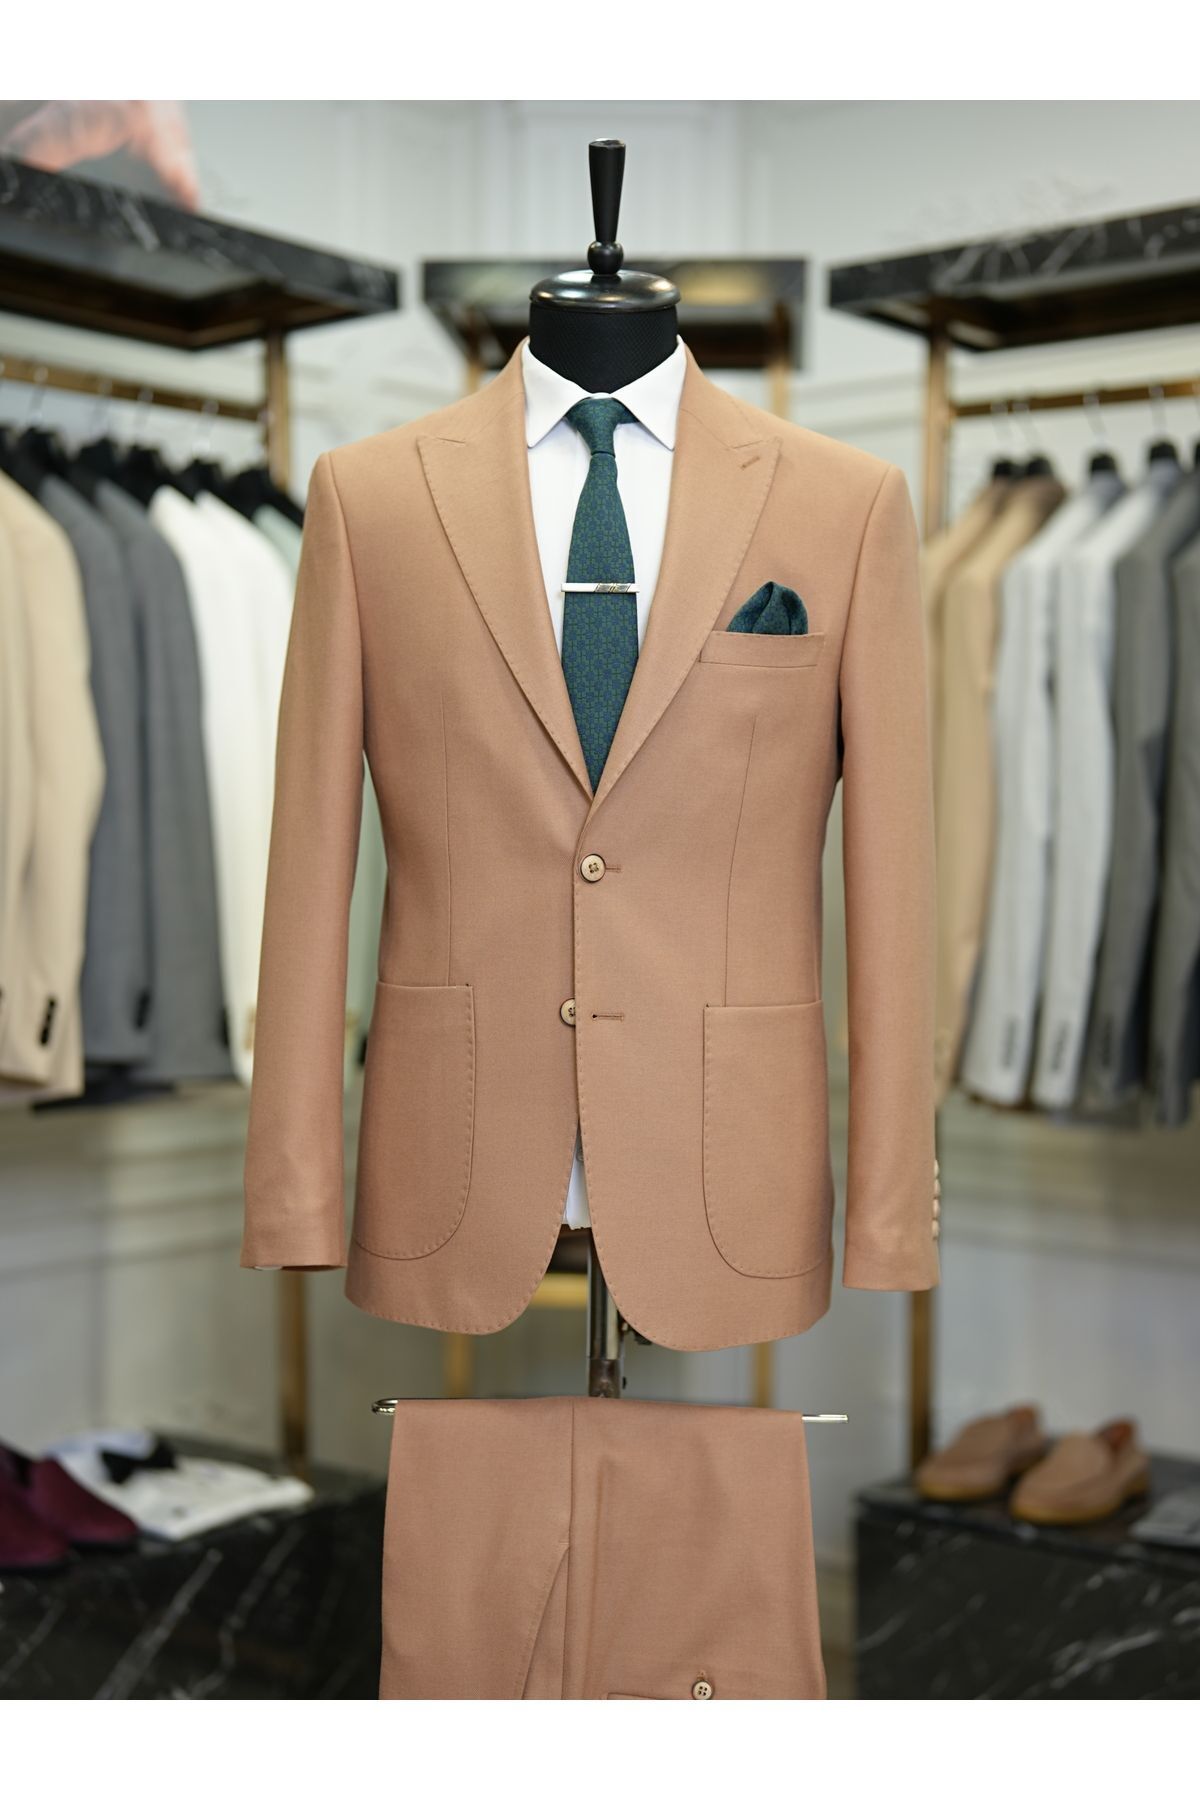 LONATOLİA Erkek Takım Elbise Luxury Yarım Astarlı Punto Dikişli Torba Cepli Slim Fit Italyan Stil - Taba